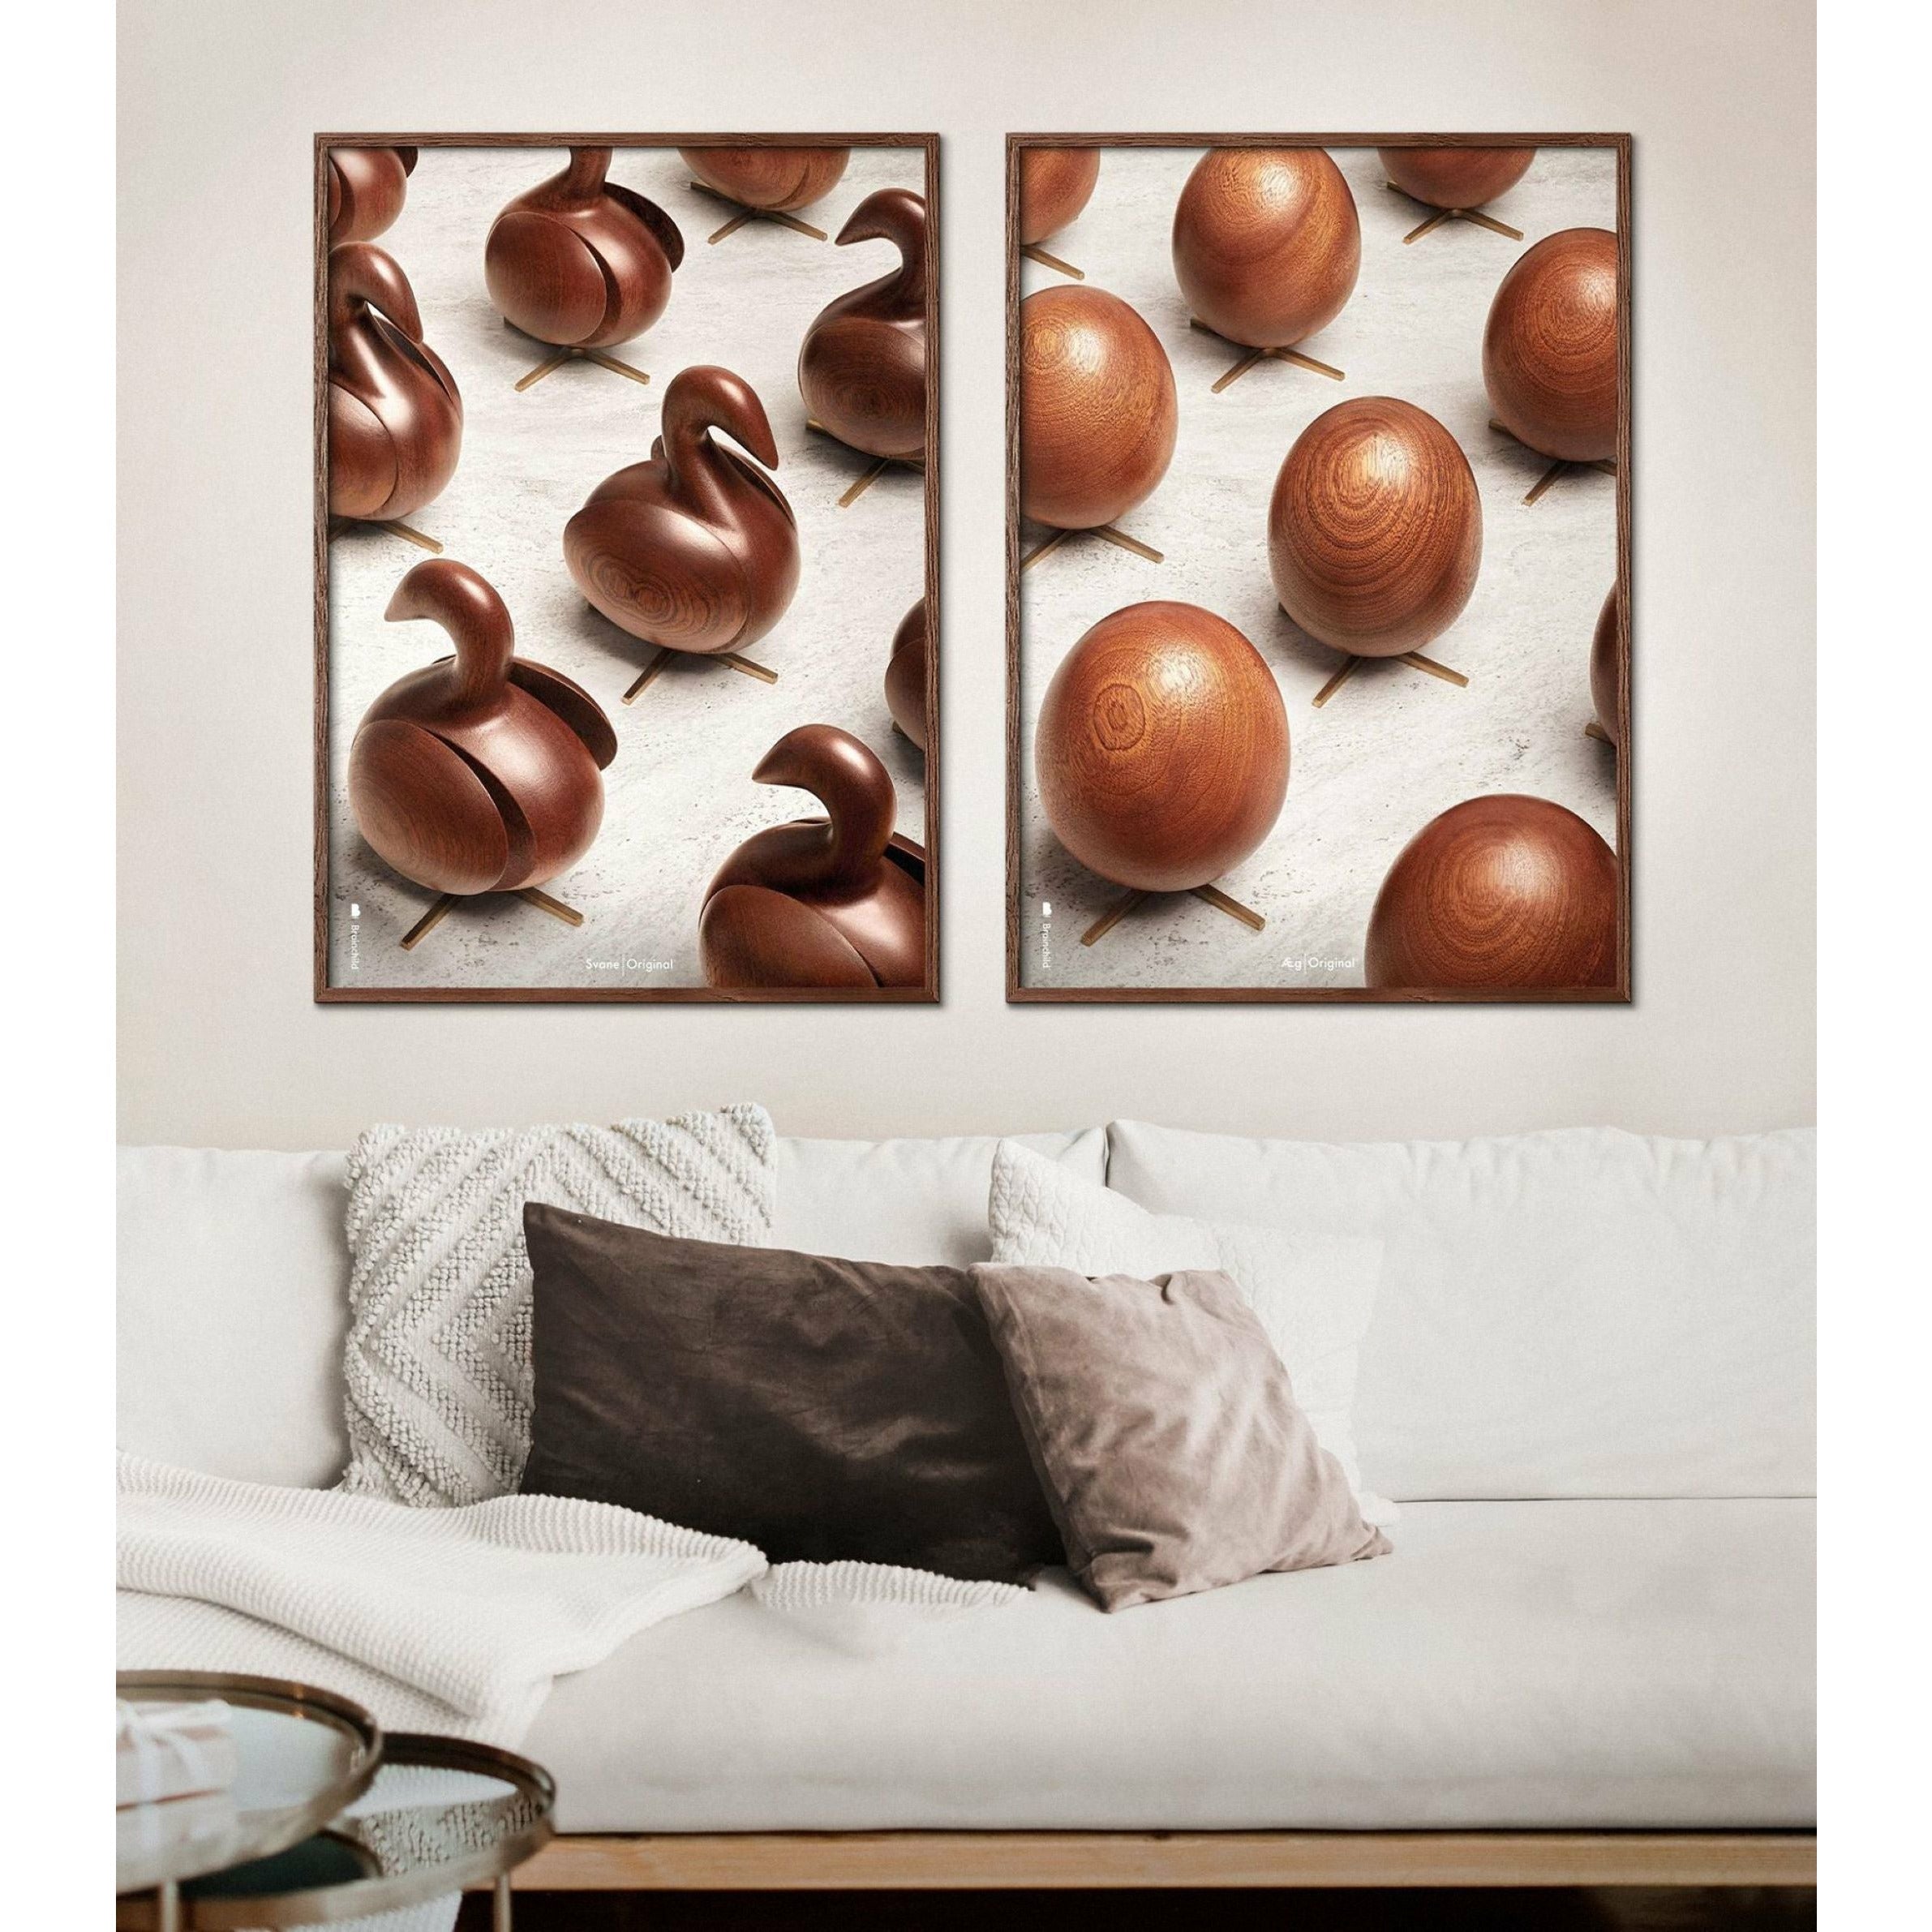 Poster per sfilata di uova di prima cosa, telaio in legno scuro, 30x40 cm